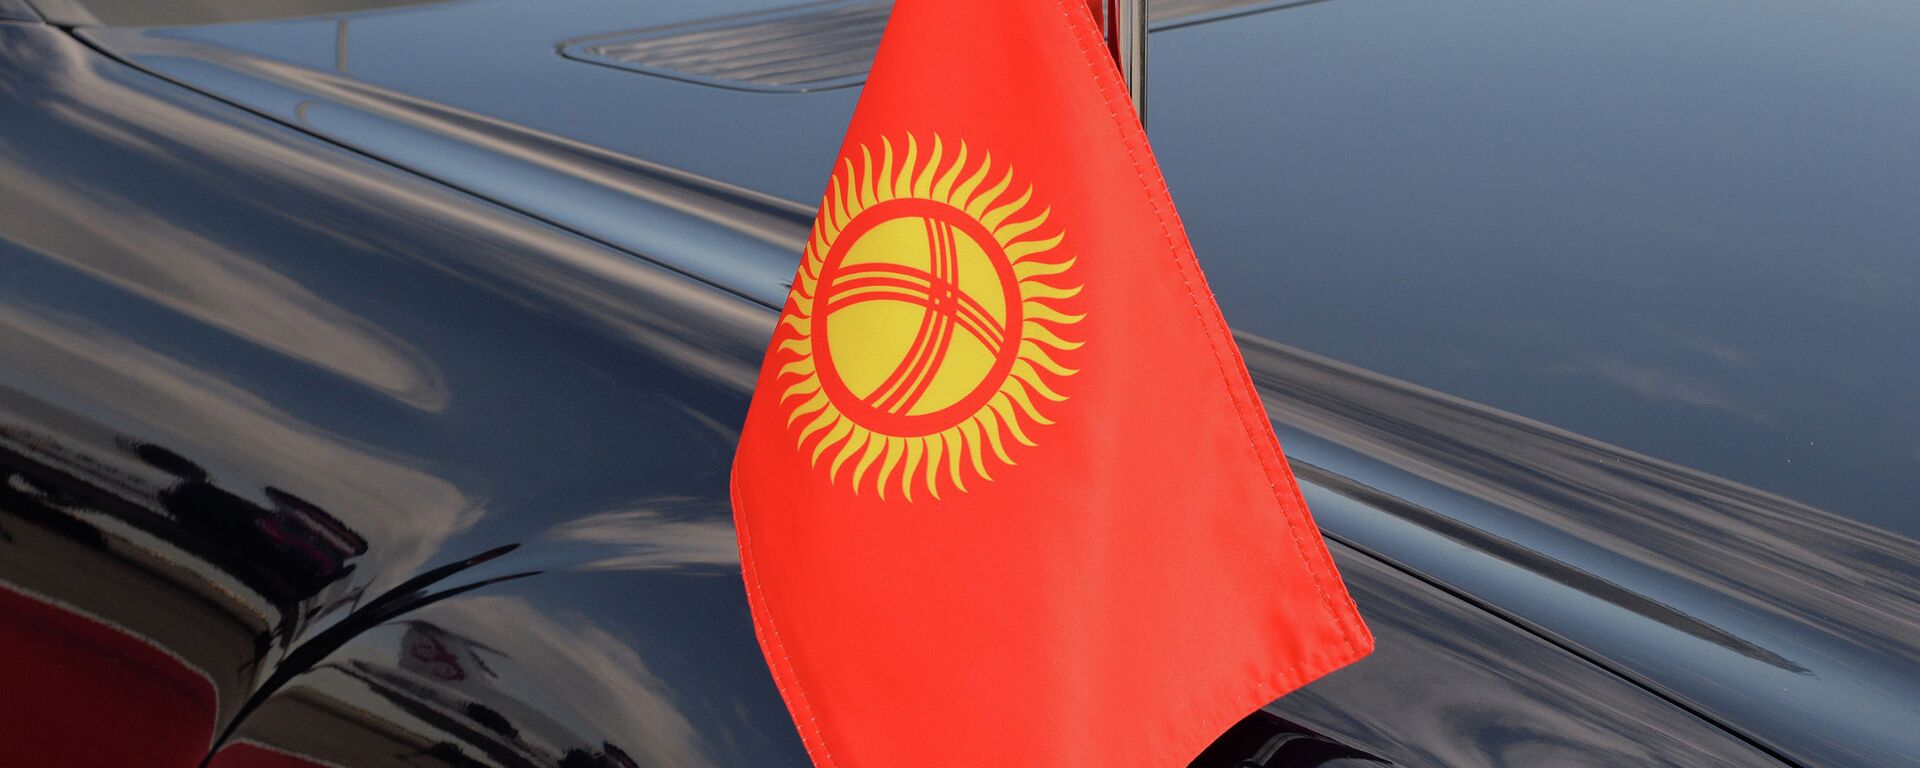 Президенттин кортежиндеги унаа. Архив - Sputnik Кыргызстан, 1920, 04.06.2021